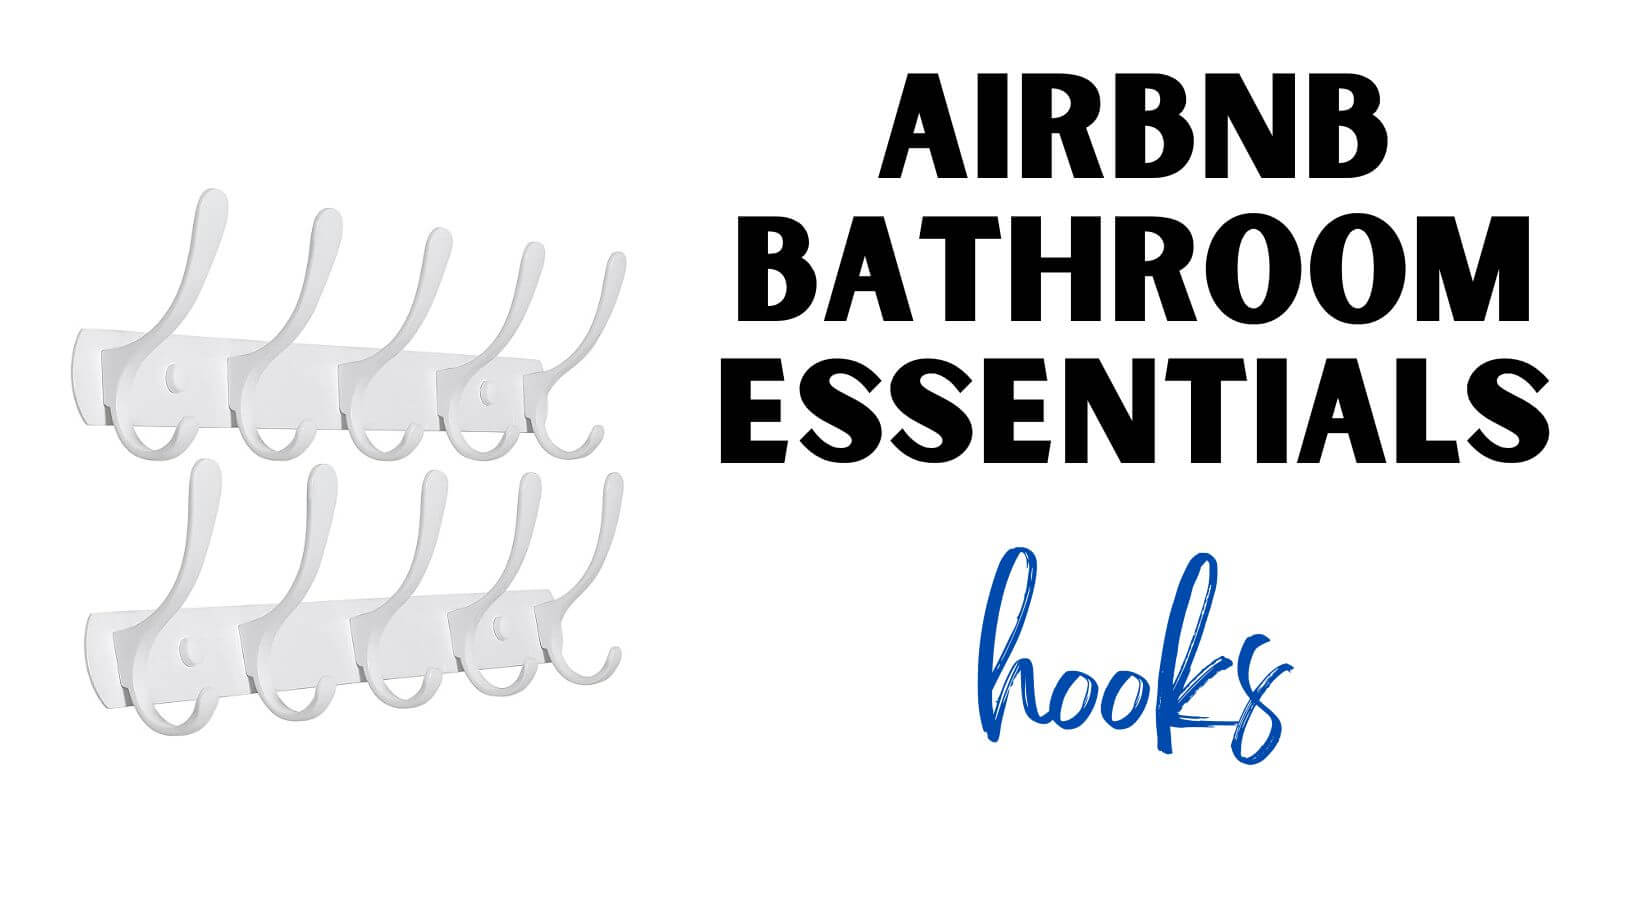 Airbnb Bathroom Essentials Hooks